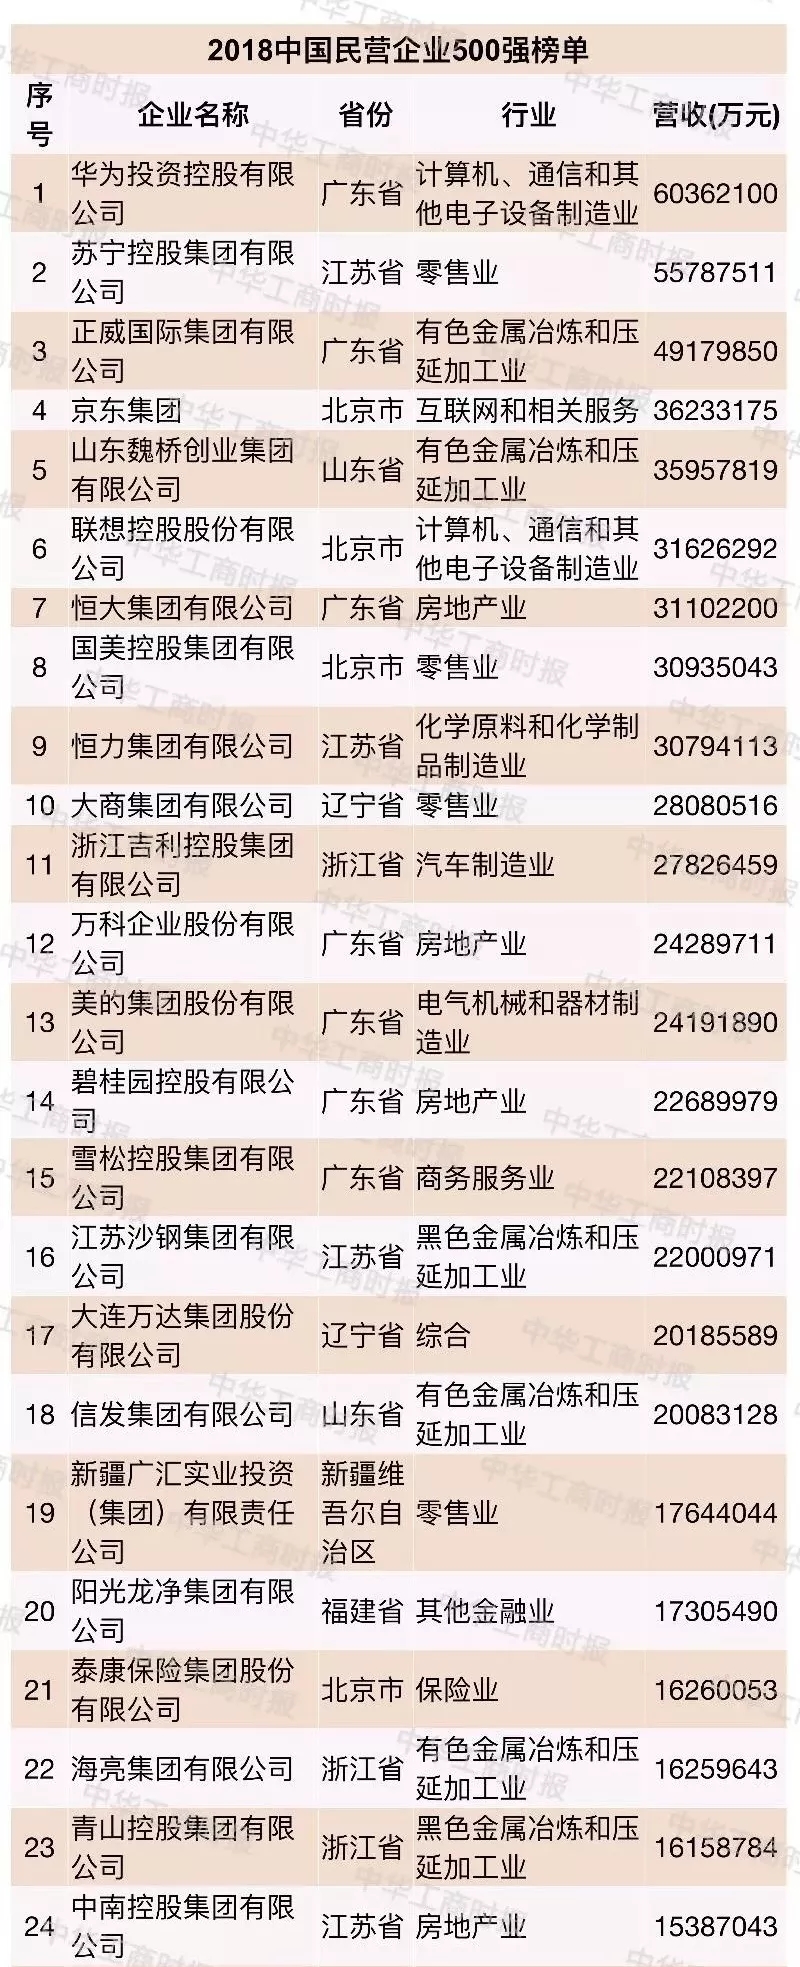 中南控股集团荣膺中国民营企业500强第24位(图1)